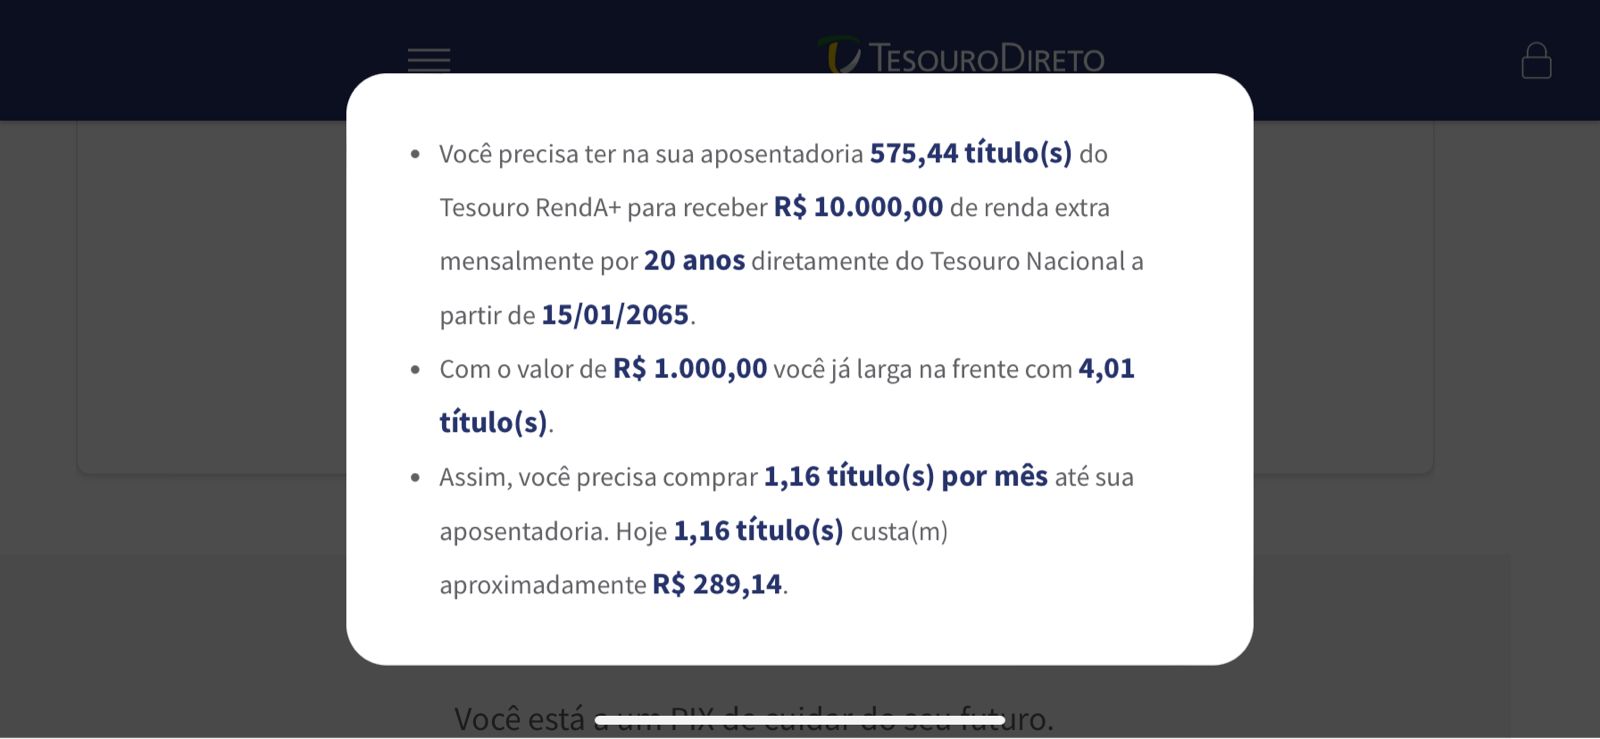 Simulação: quanto é preciso investir no Tesouro Renda+ para ter rendimentos de R$ 10.000,00 na aposentadoria